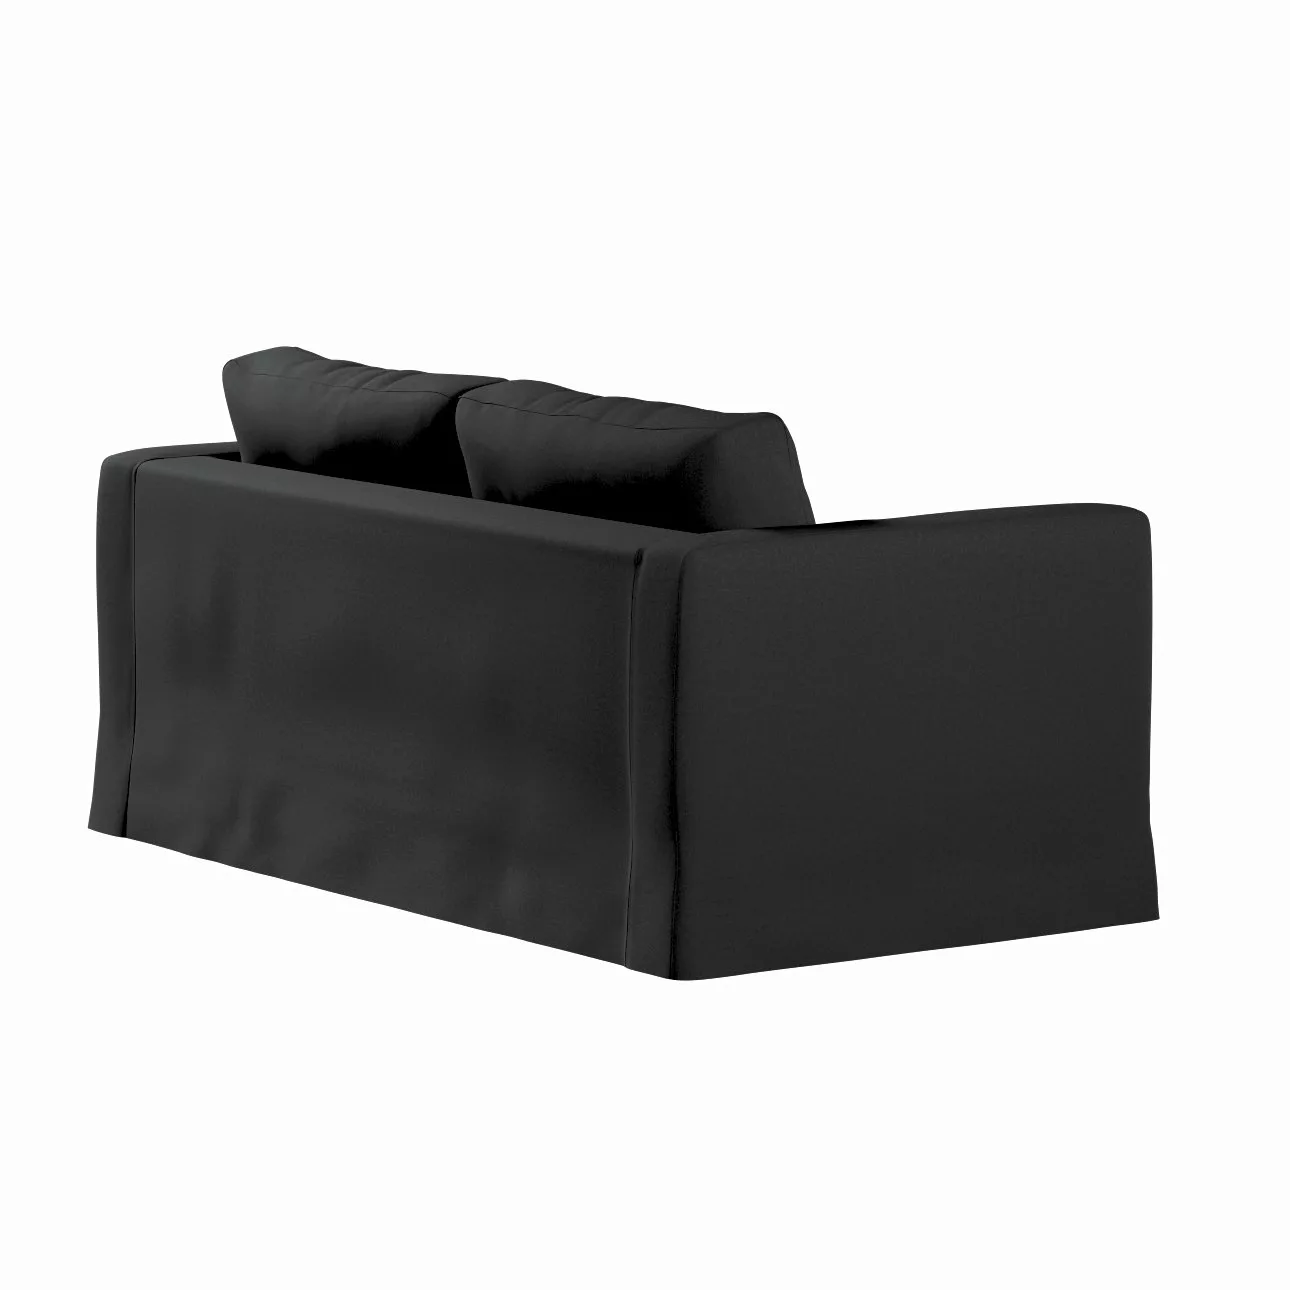 Bezug für Karlstad 2-Sitzer Sofa nicht ausklappbar, lang, schwarz, Sofahuss günstig online kaufen